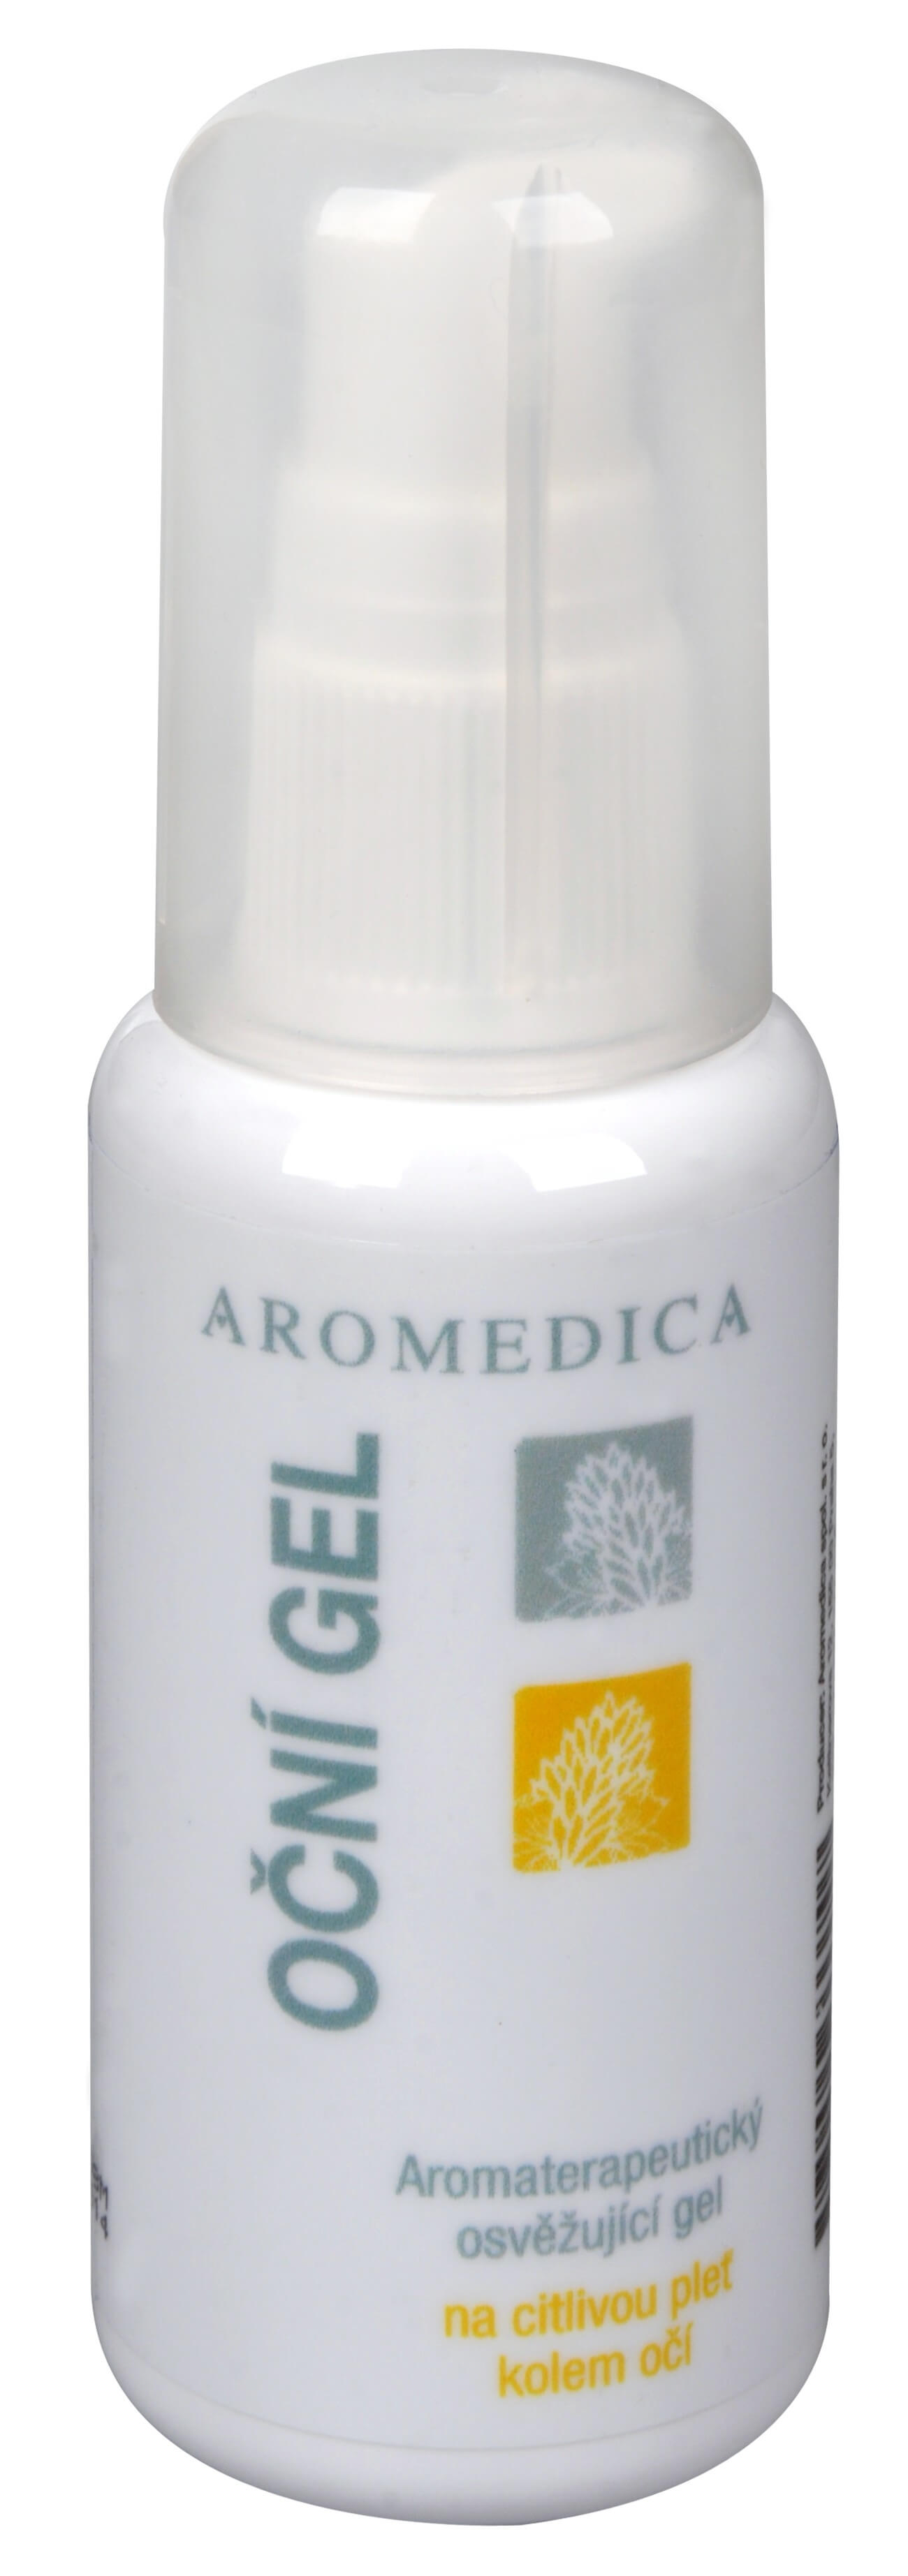 Zobrazit detail výrobku Aromedica Oční gel - aromaterapeutický osvěžující gel na citlivou pleť kolem očí 50 ml